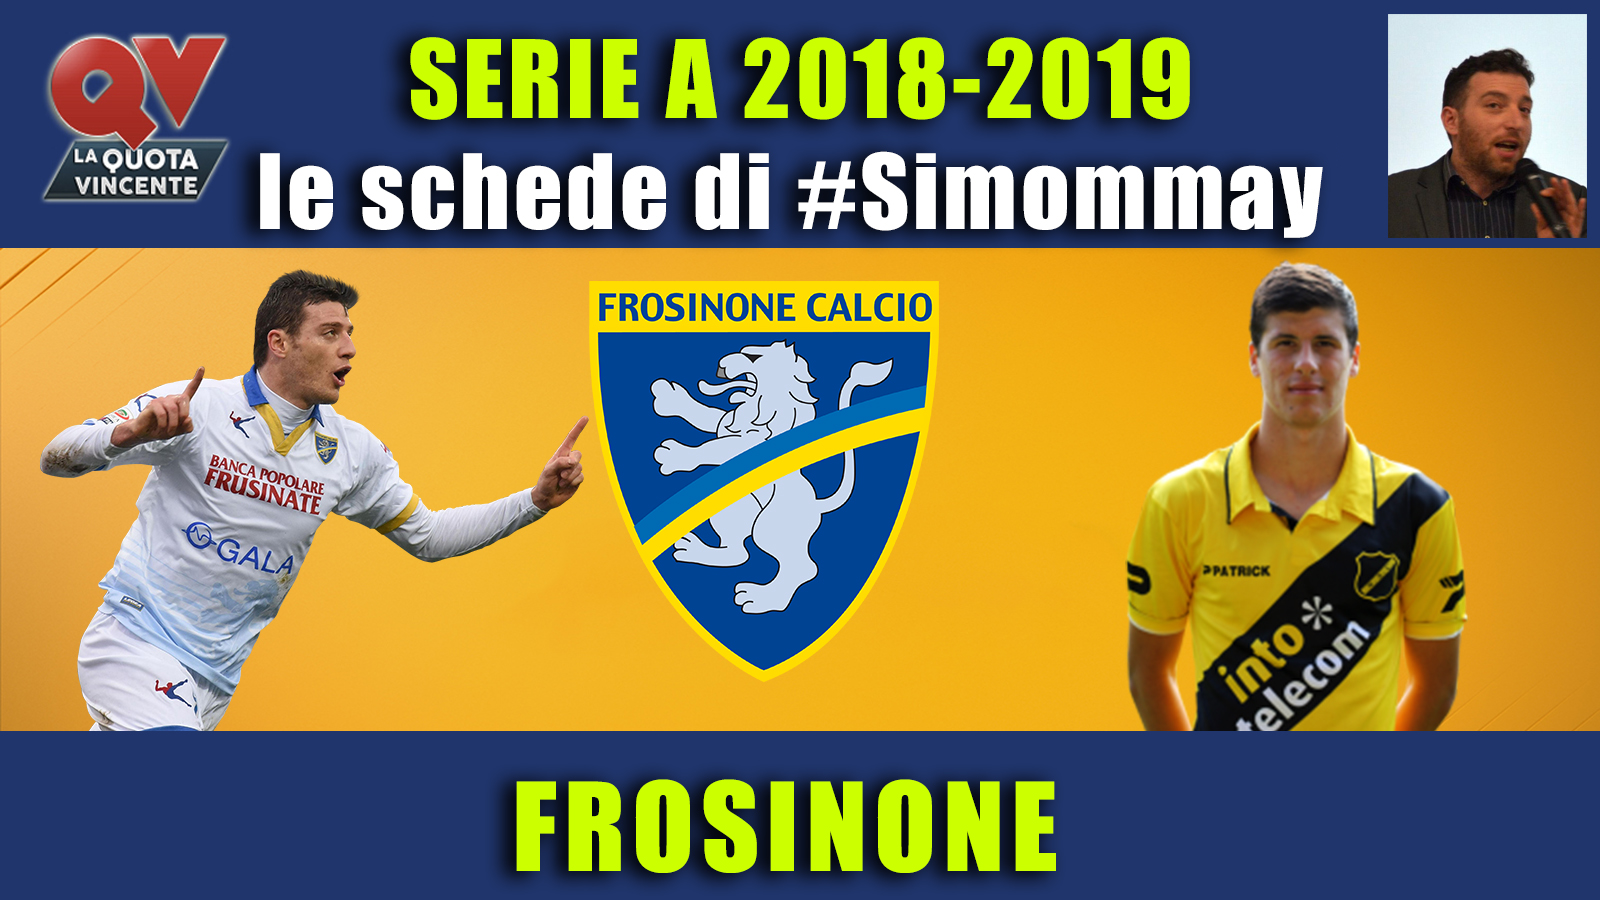 Guida Serie A 2018-2019 FROSINONE: il ritorno dei ciociari in Serie A